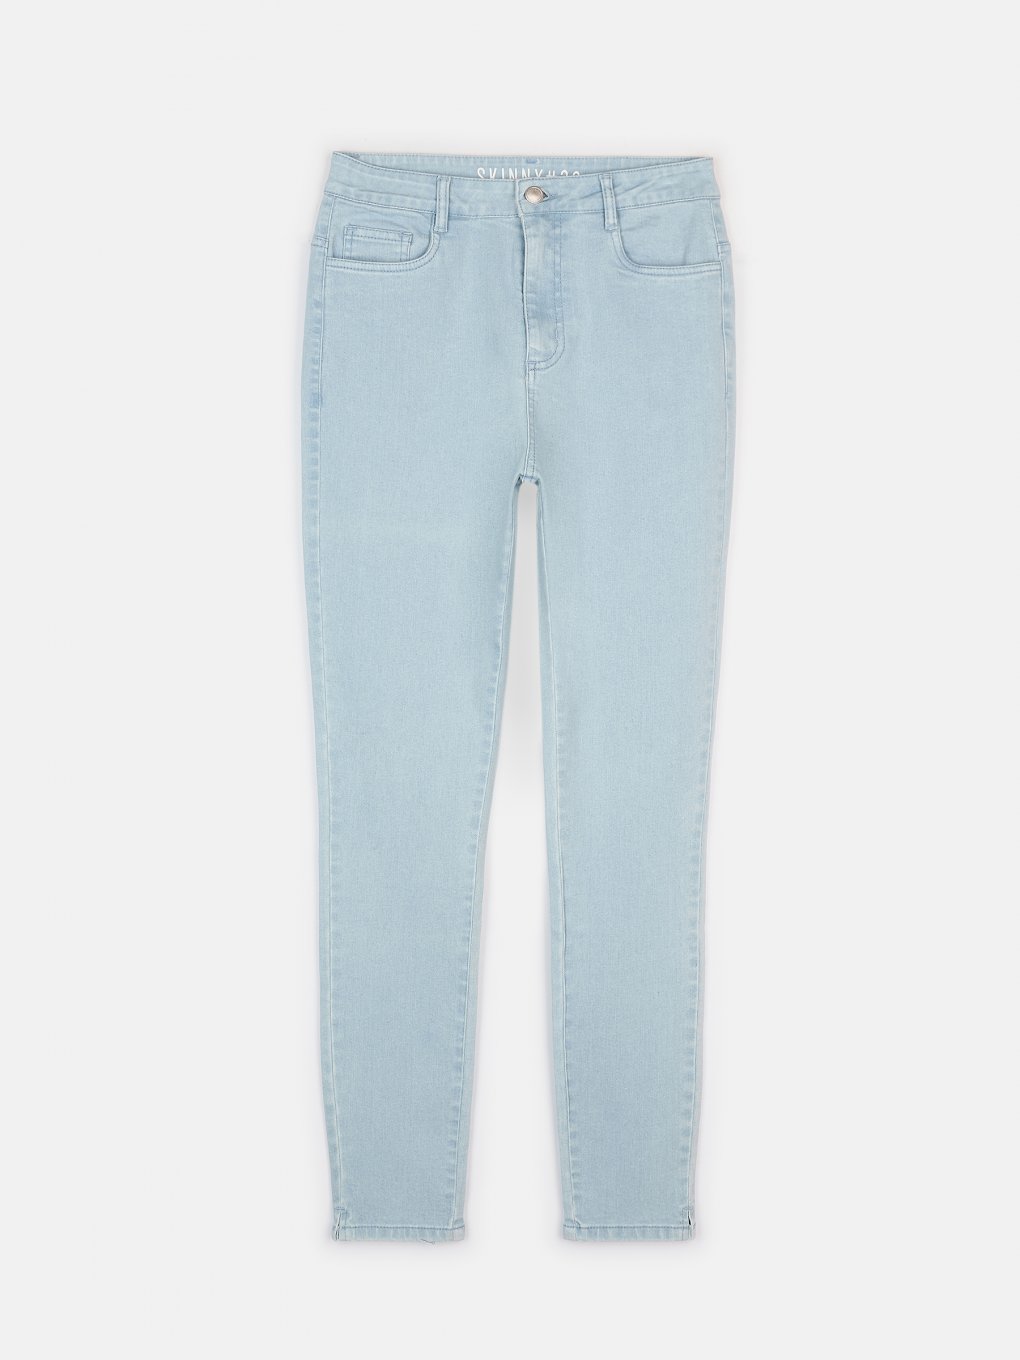 Základní basic dámské džíny skinny